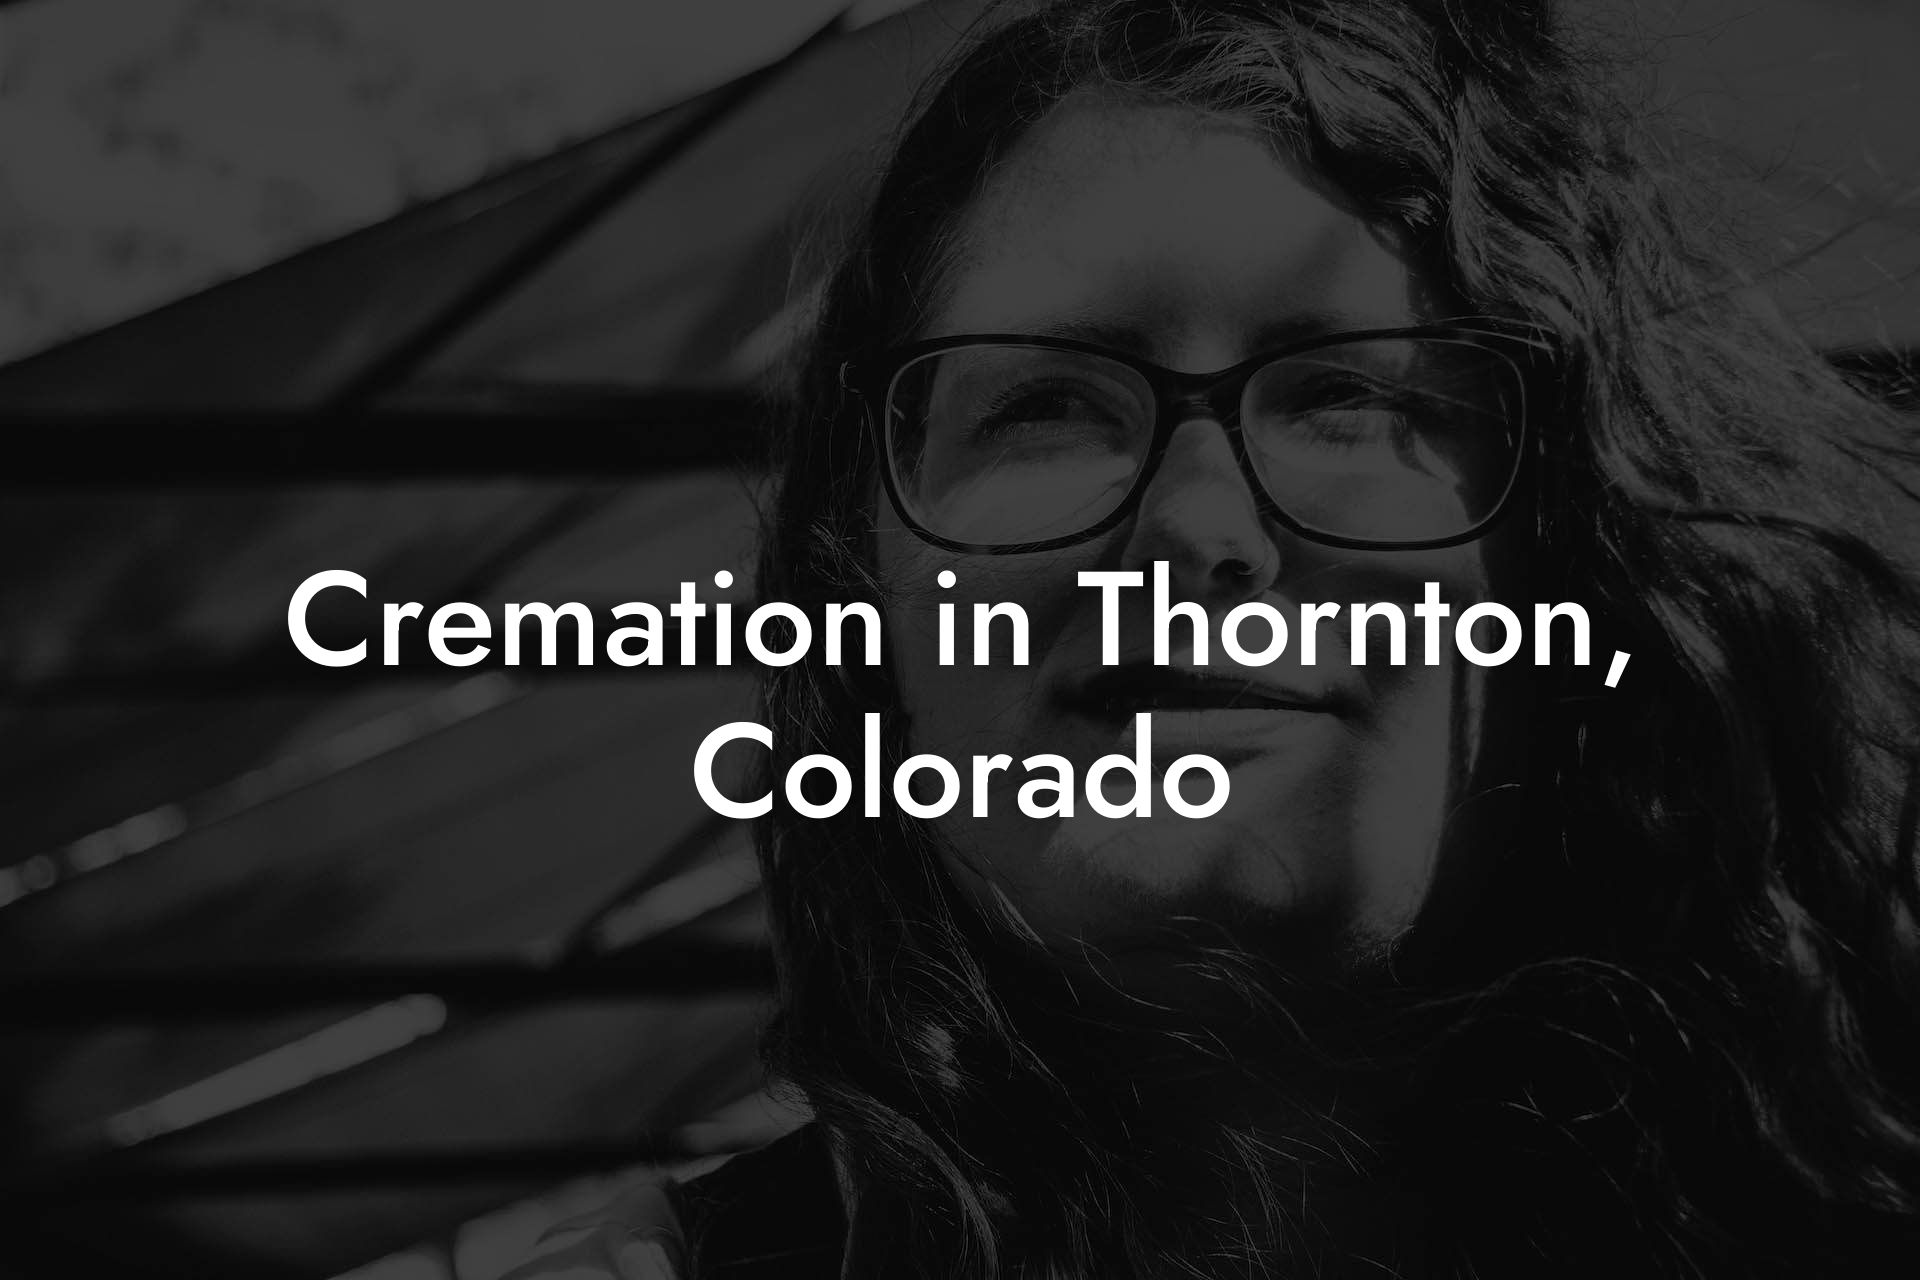 Cremation in Thornton, Colorado